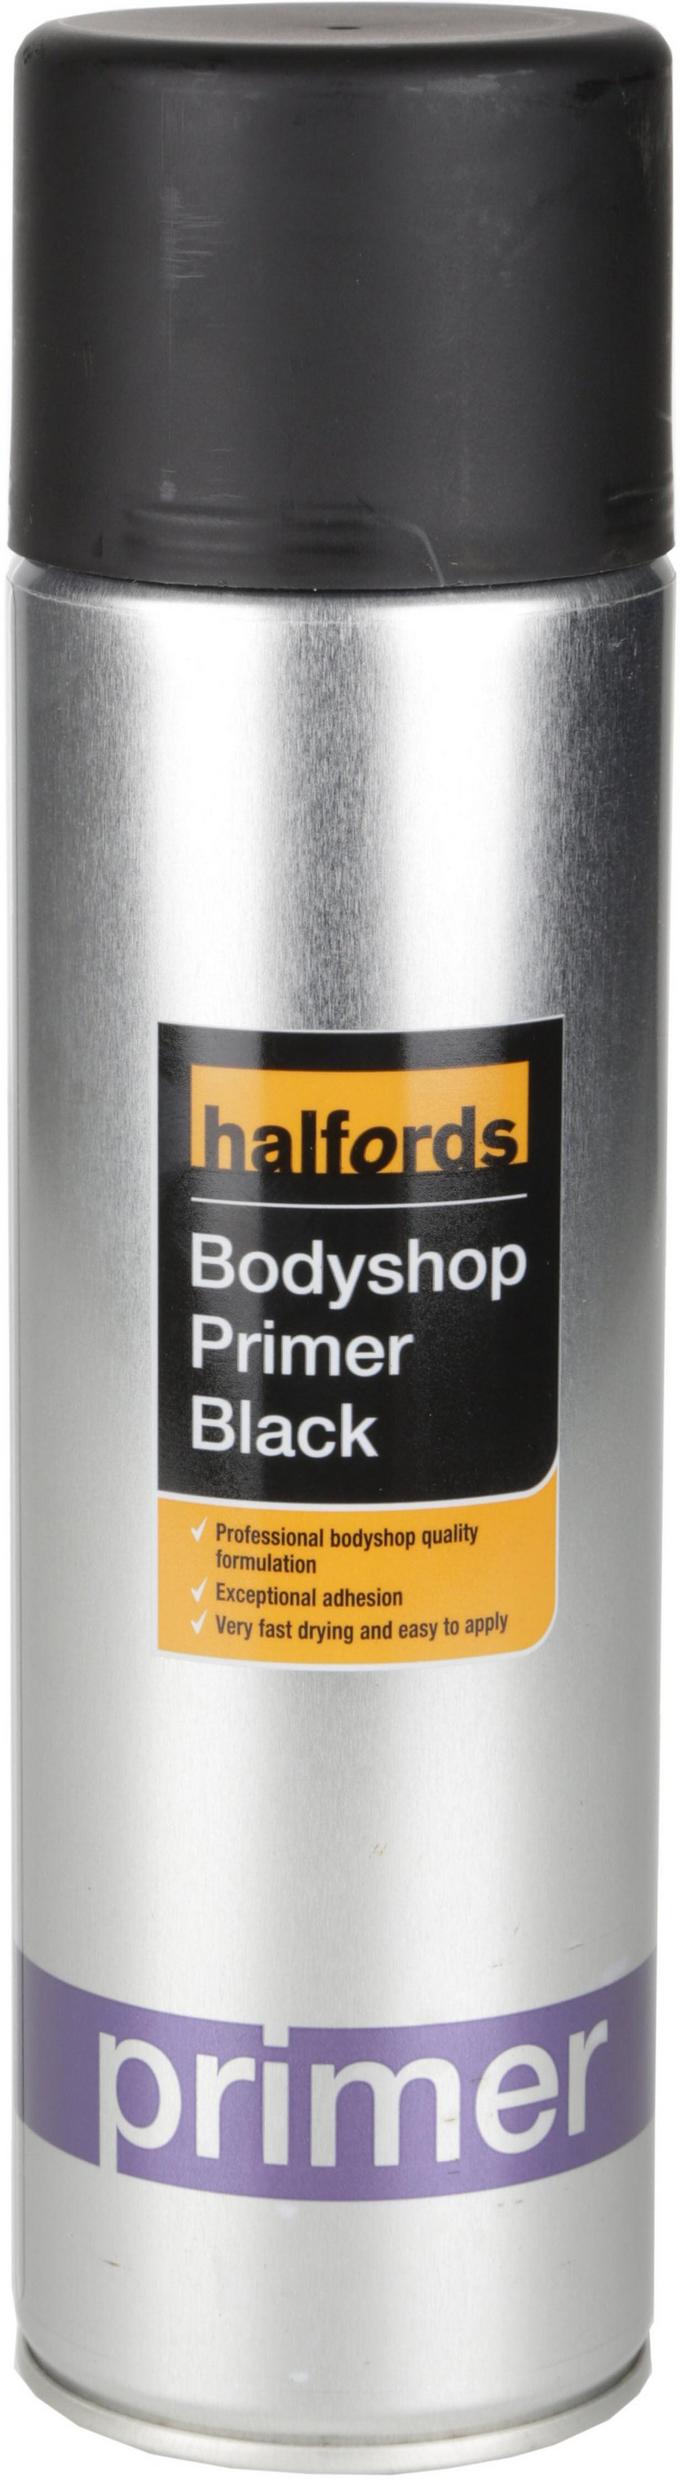 Halfords Bodyshop Primer Black